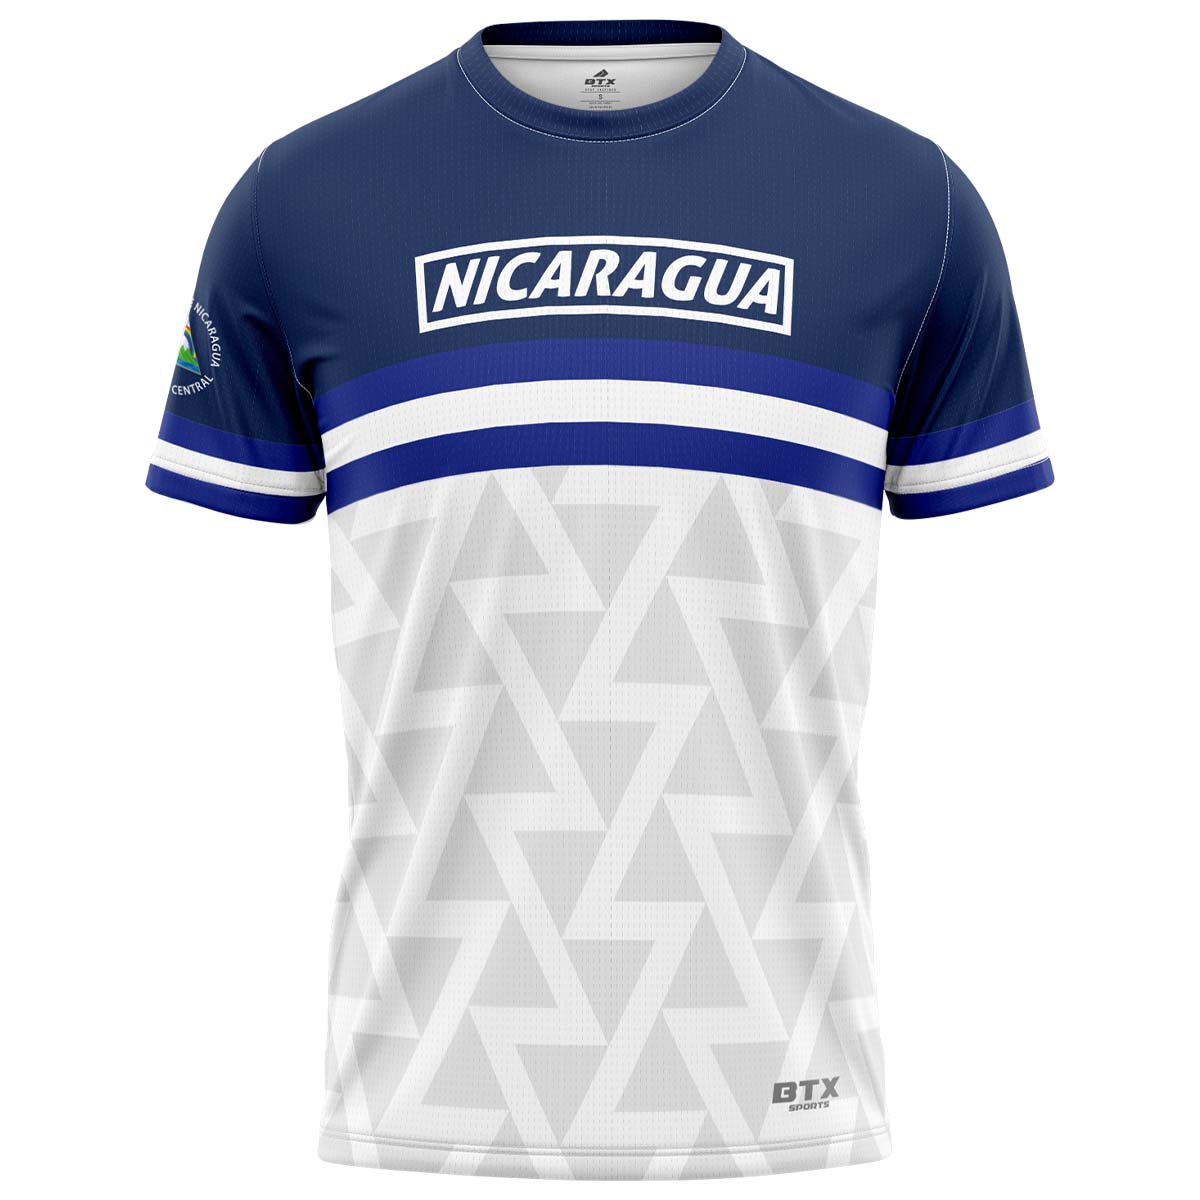 Camiseta Nicaragua original 01